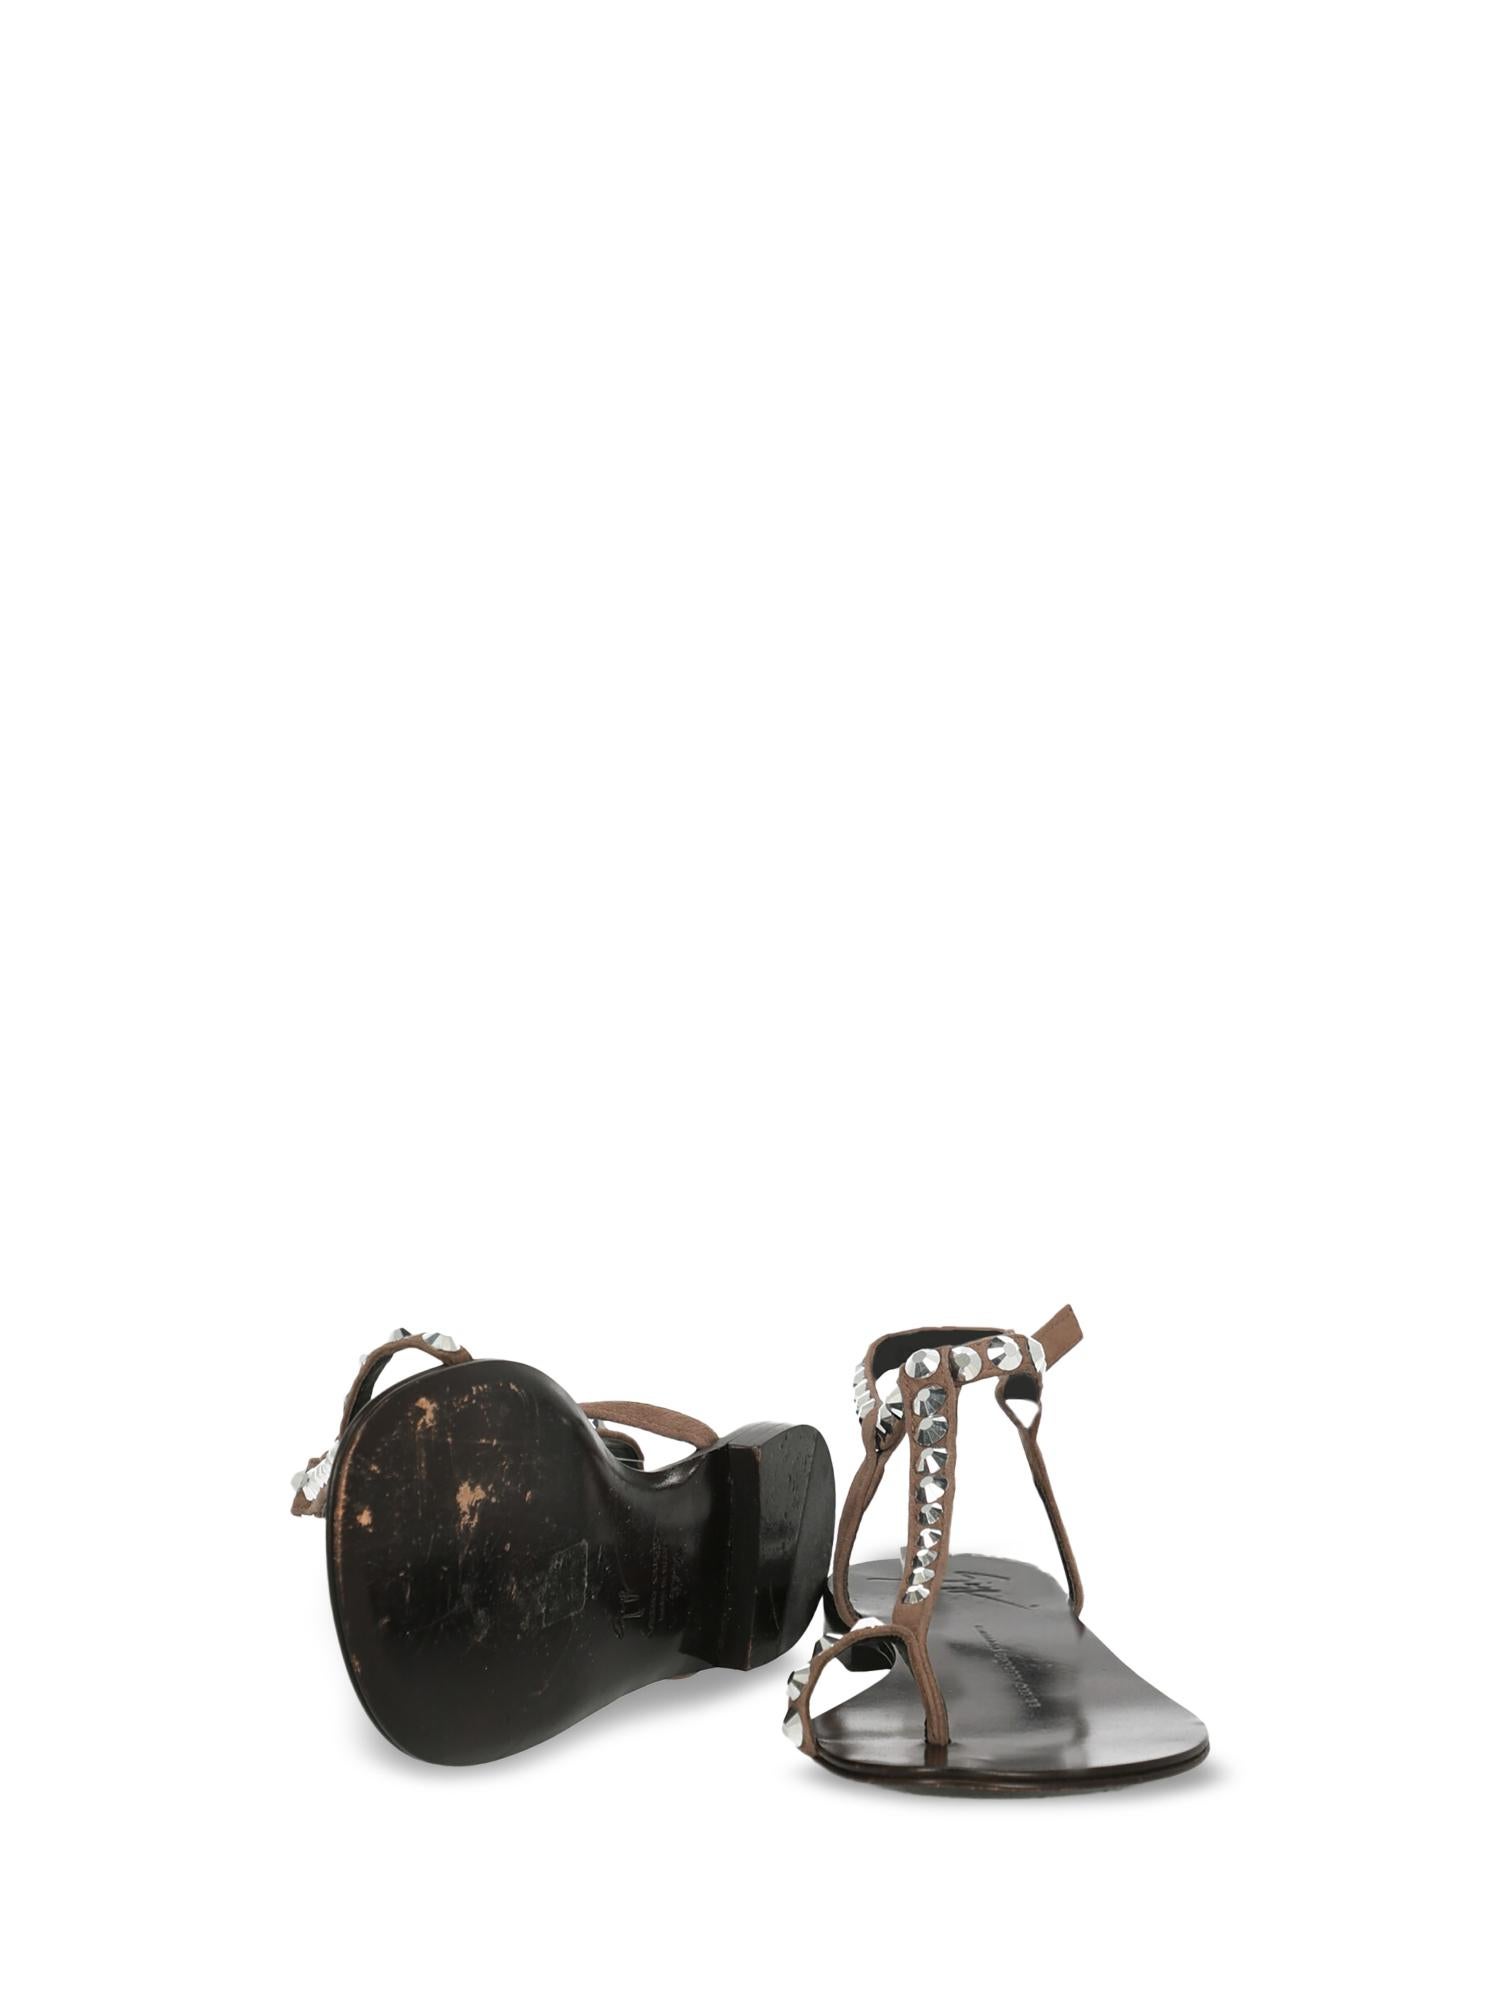 Women's Giuseppe Zanotti Woman Flip-flops Brown Leather IT 37.5 For Sale